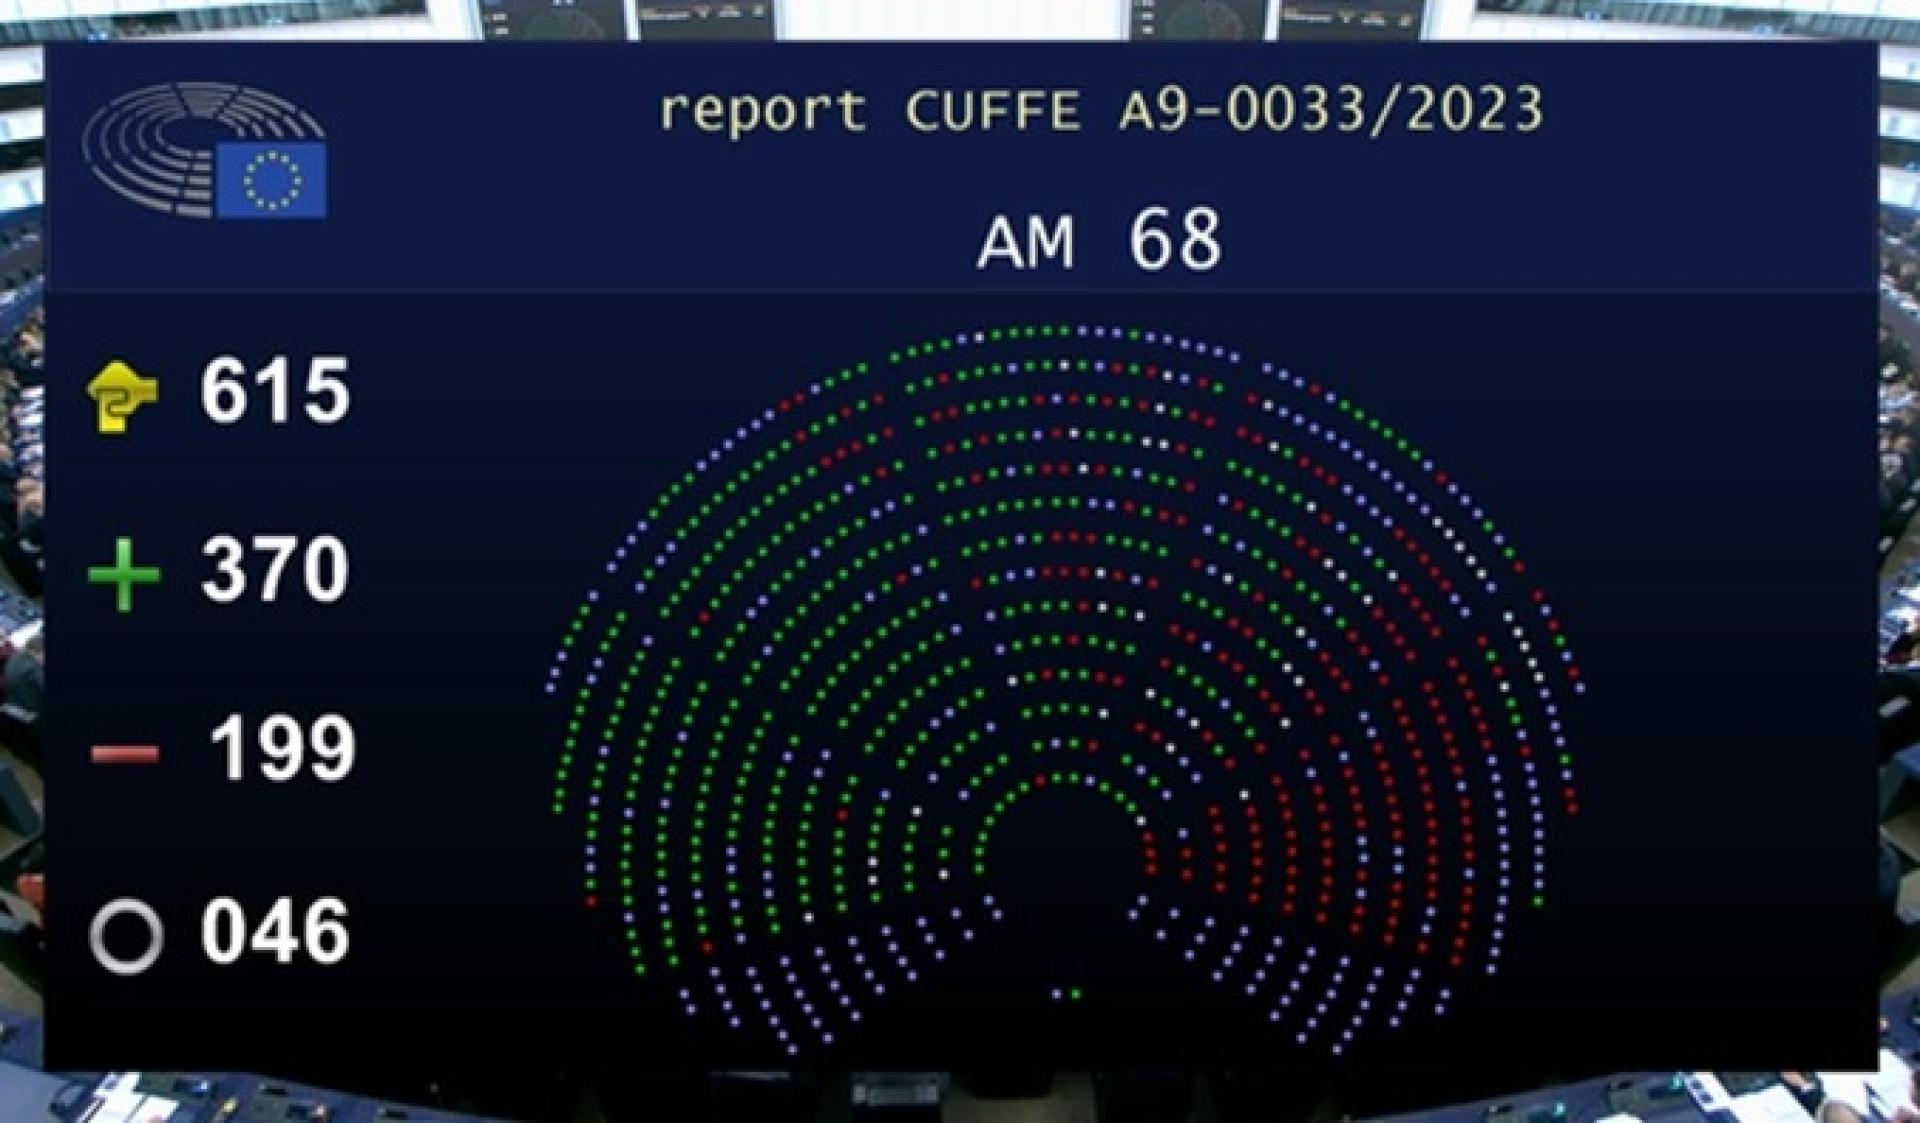 Europa-Parlamentet har talt: 370 stemte for og 199 imod det nye bygningsdirektiv. Nu venter bl.a. vedtagelse i EU's ministerråd, oversættelse til dansk og at direktivet publiceres i EU-tidende, før det kan behandles i medlemsstaterne. Foto: Synergi